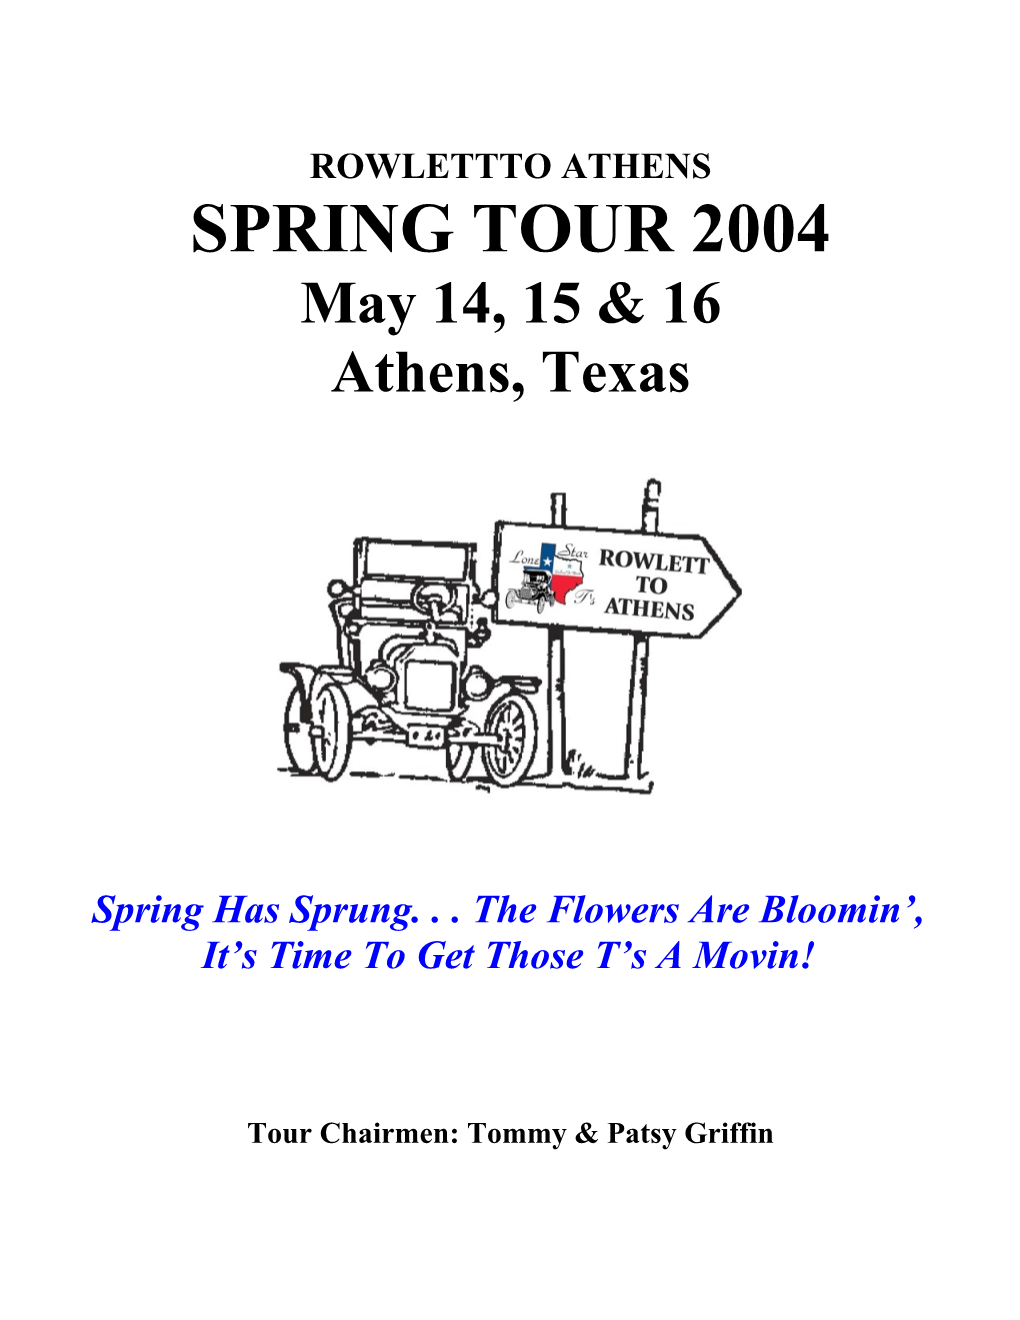 Rowlettto Athens - Spring Tour 2004